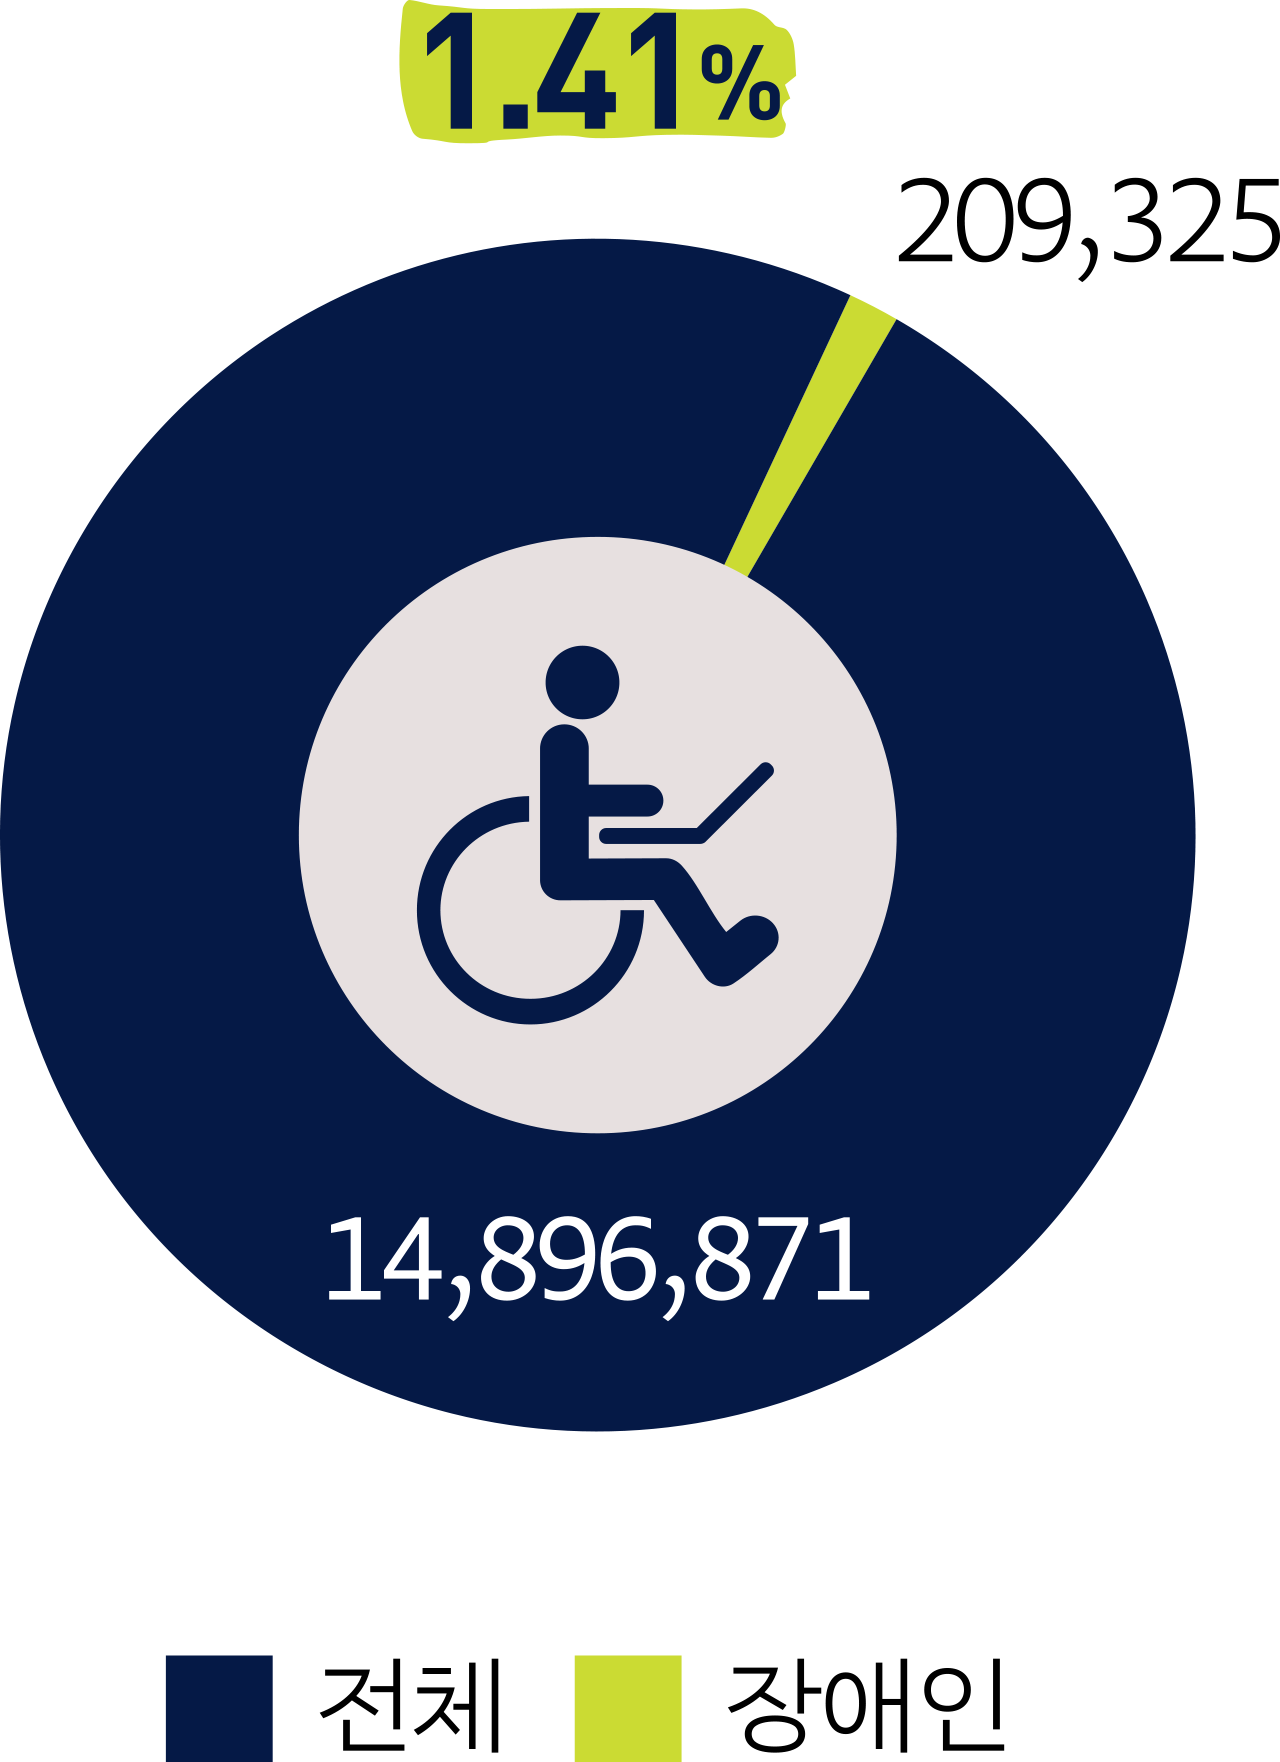 1.41% 전체 14,896,871명 장애인 209,325명